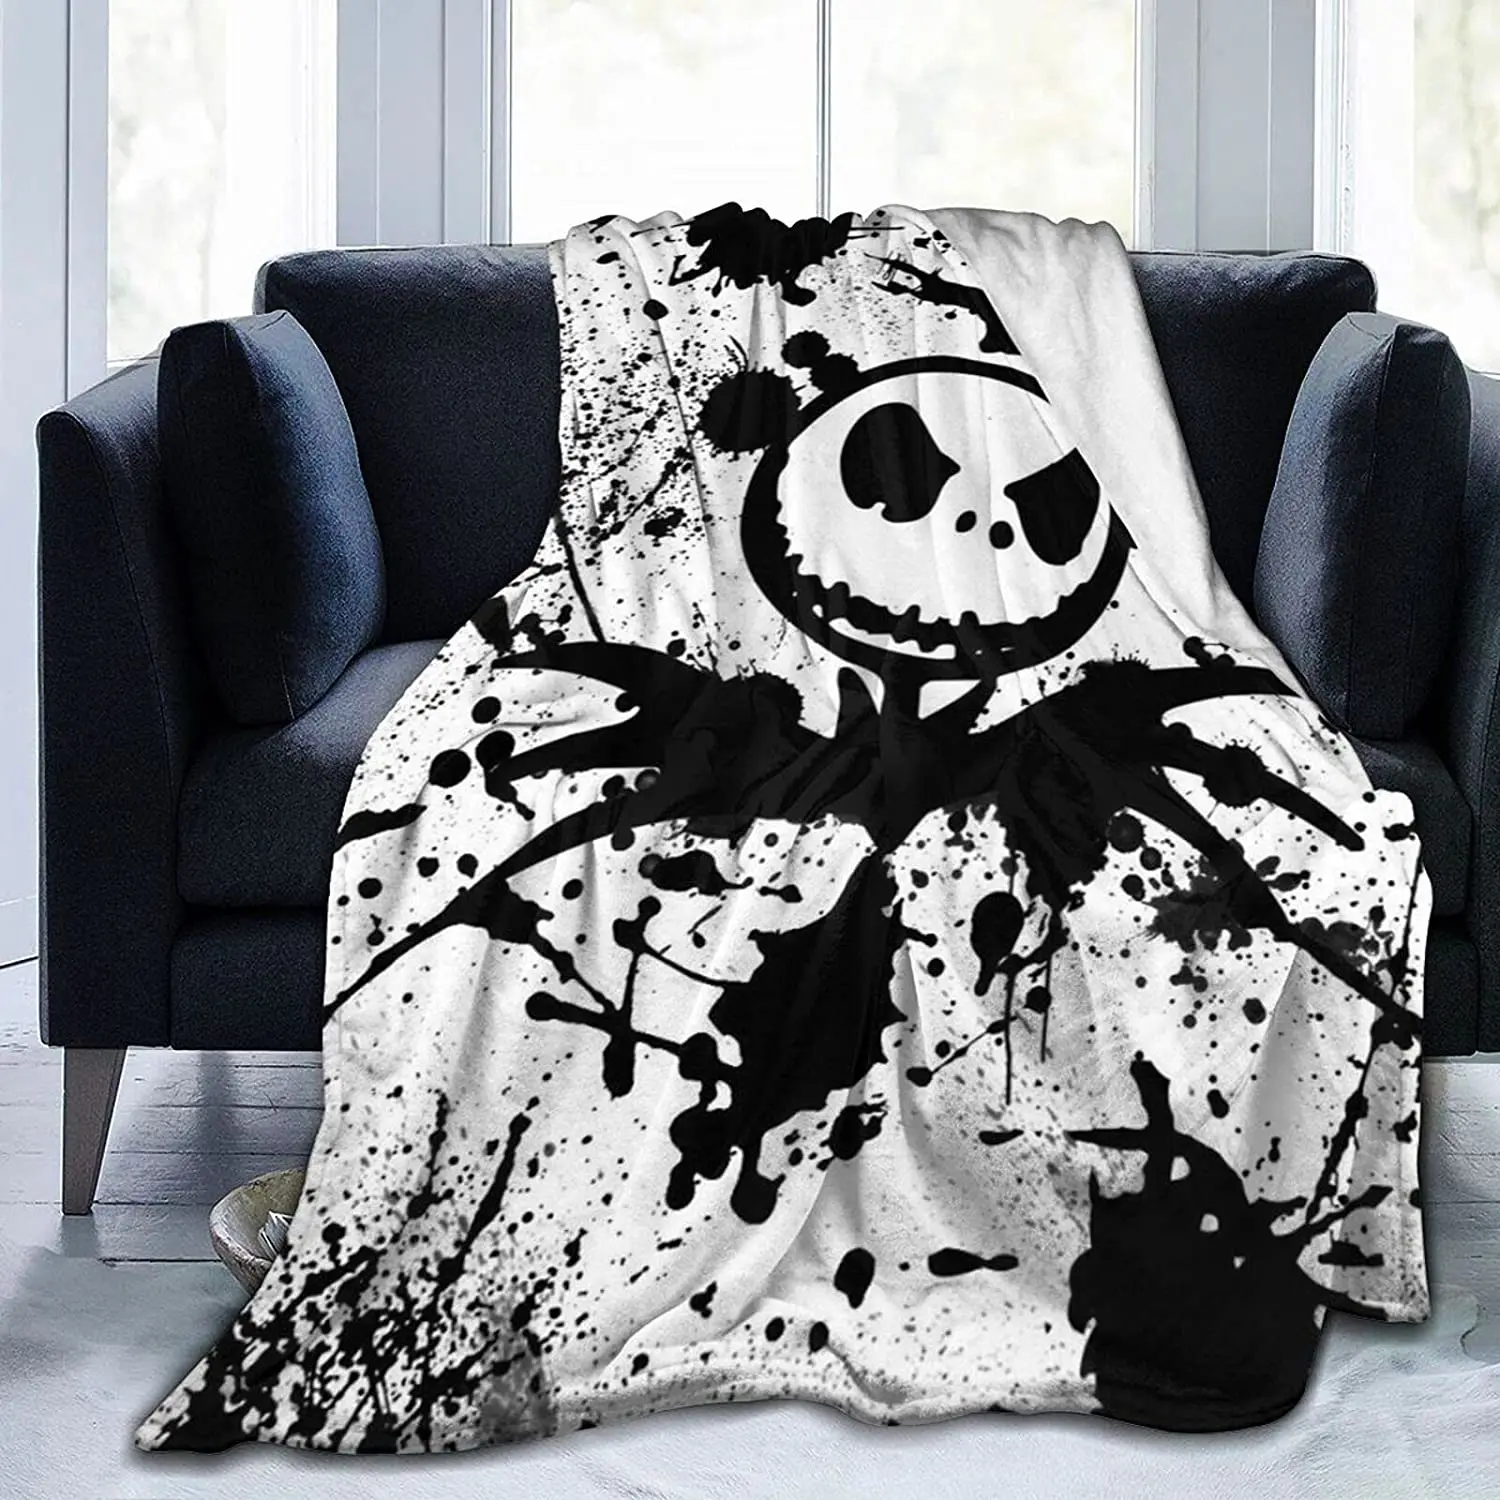 

Фланелевое Одеяло для Хэллоуина, сверхмягкое удобное покрывало для кровати, дивана, всесезонное, 150x220 см